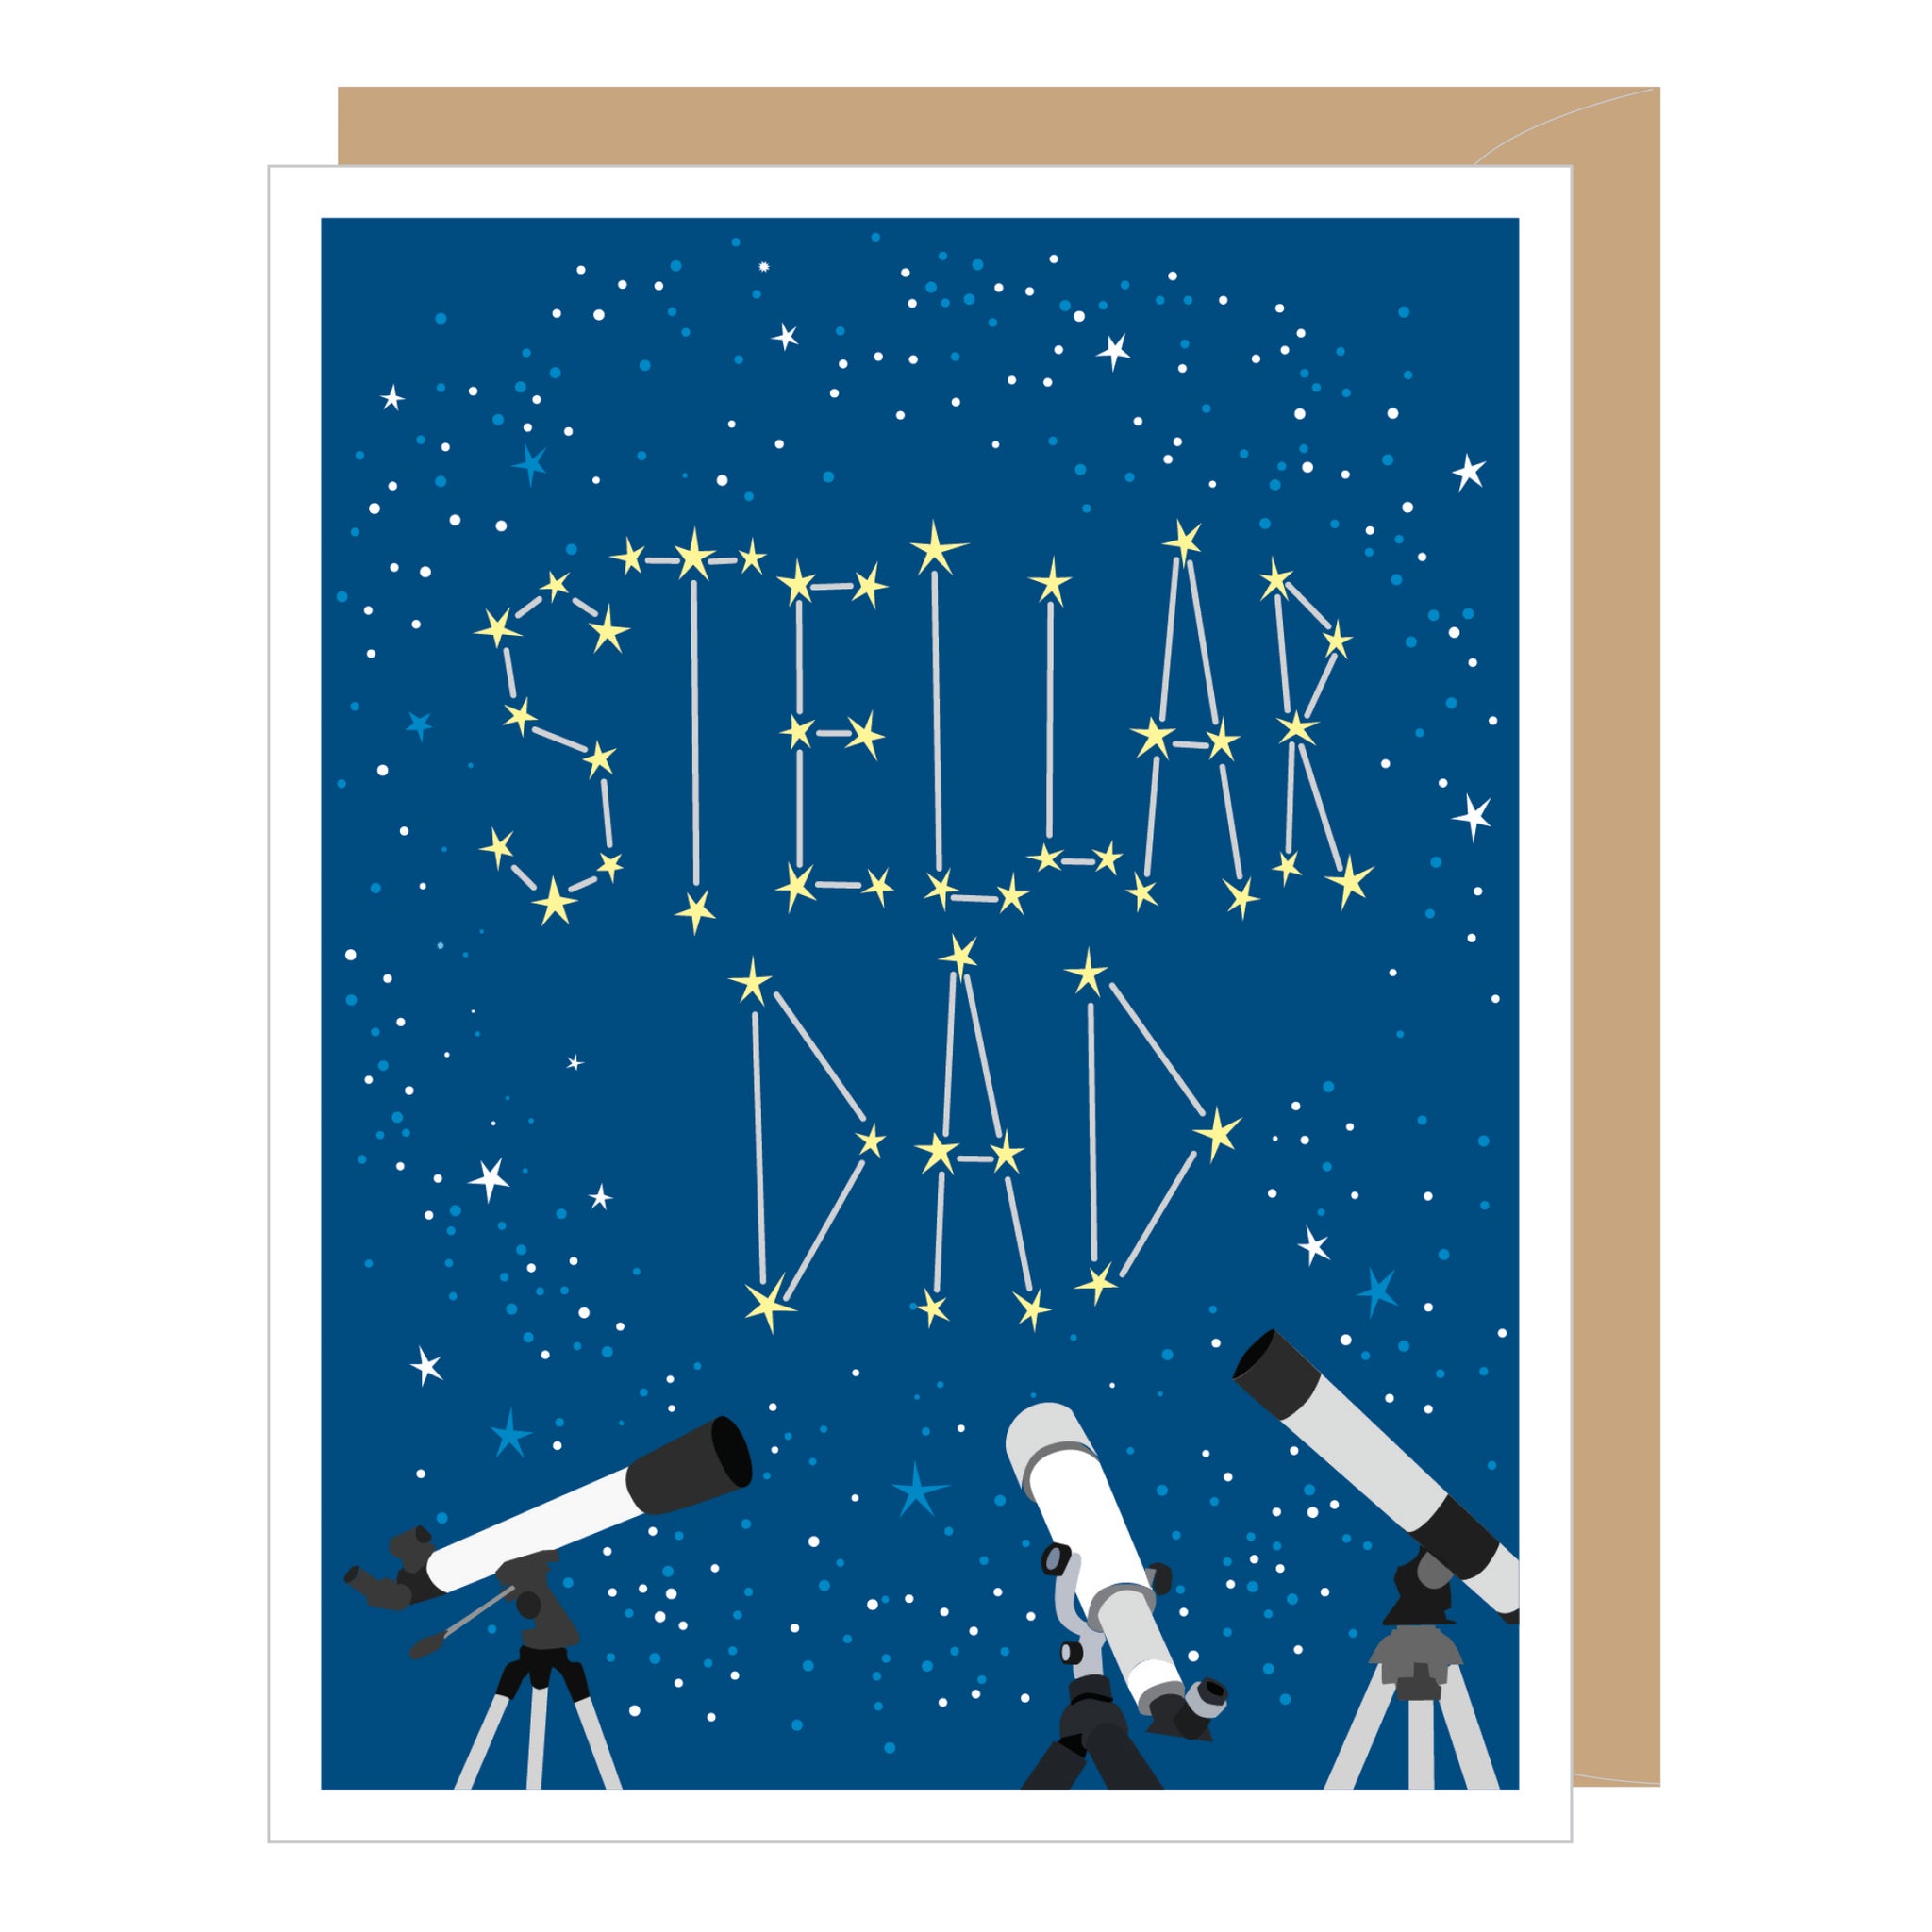 Stellar Dad Father's Day Card